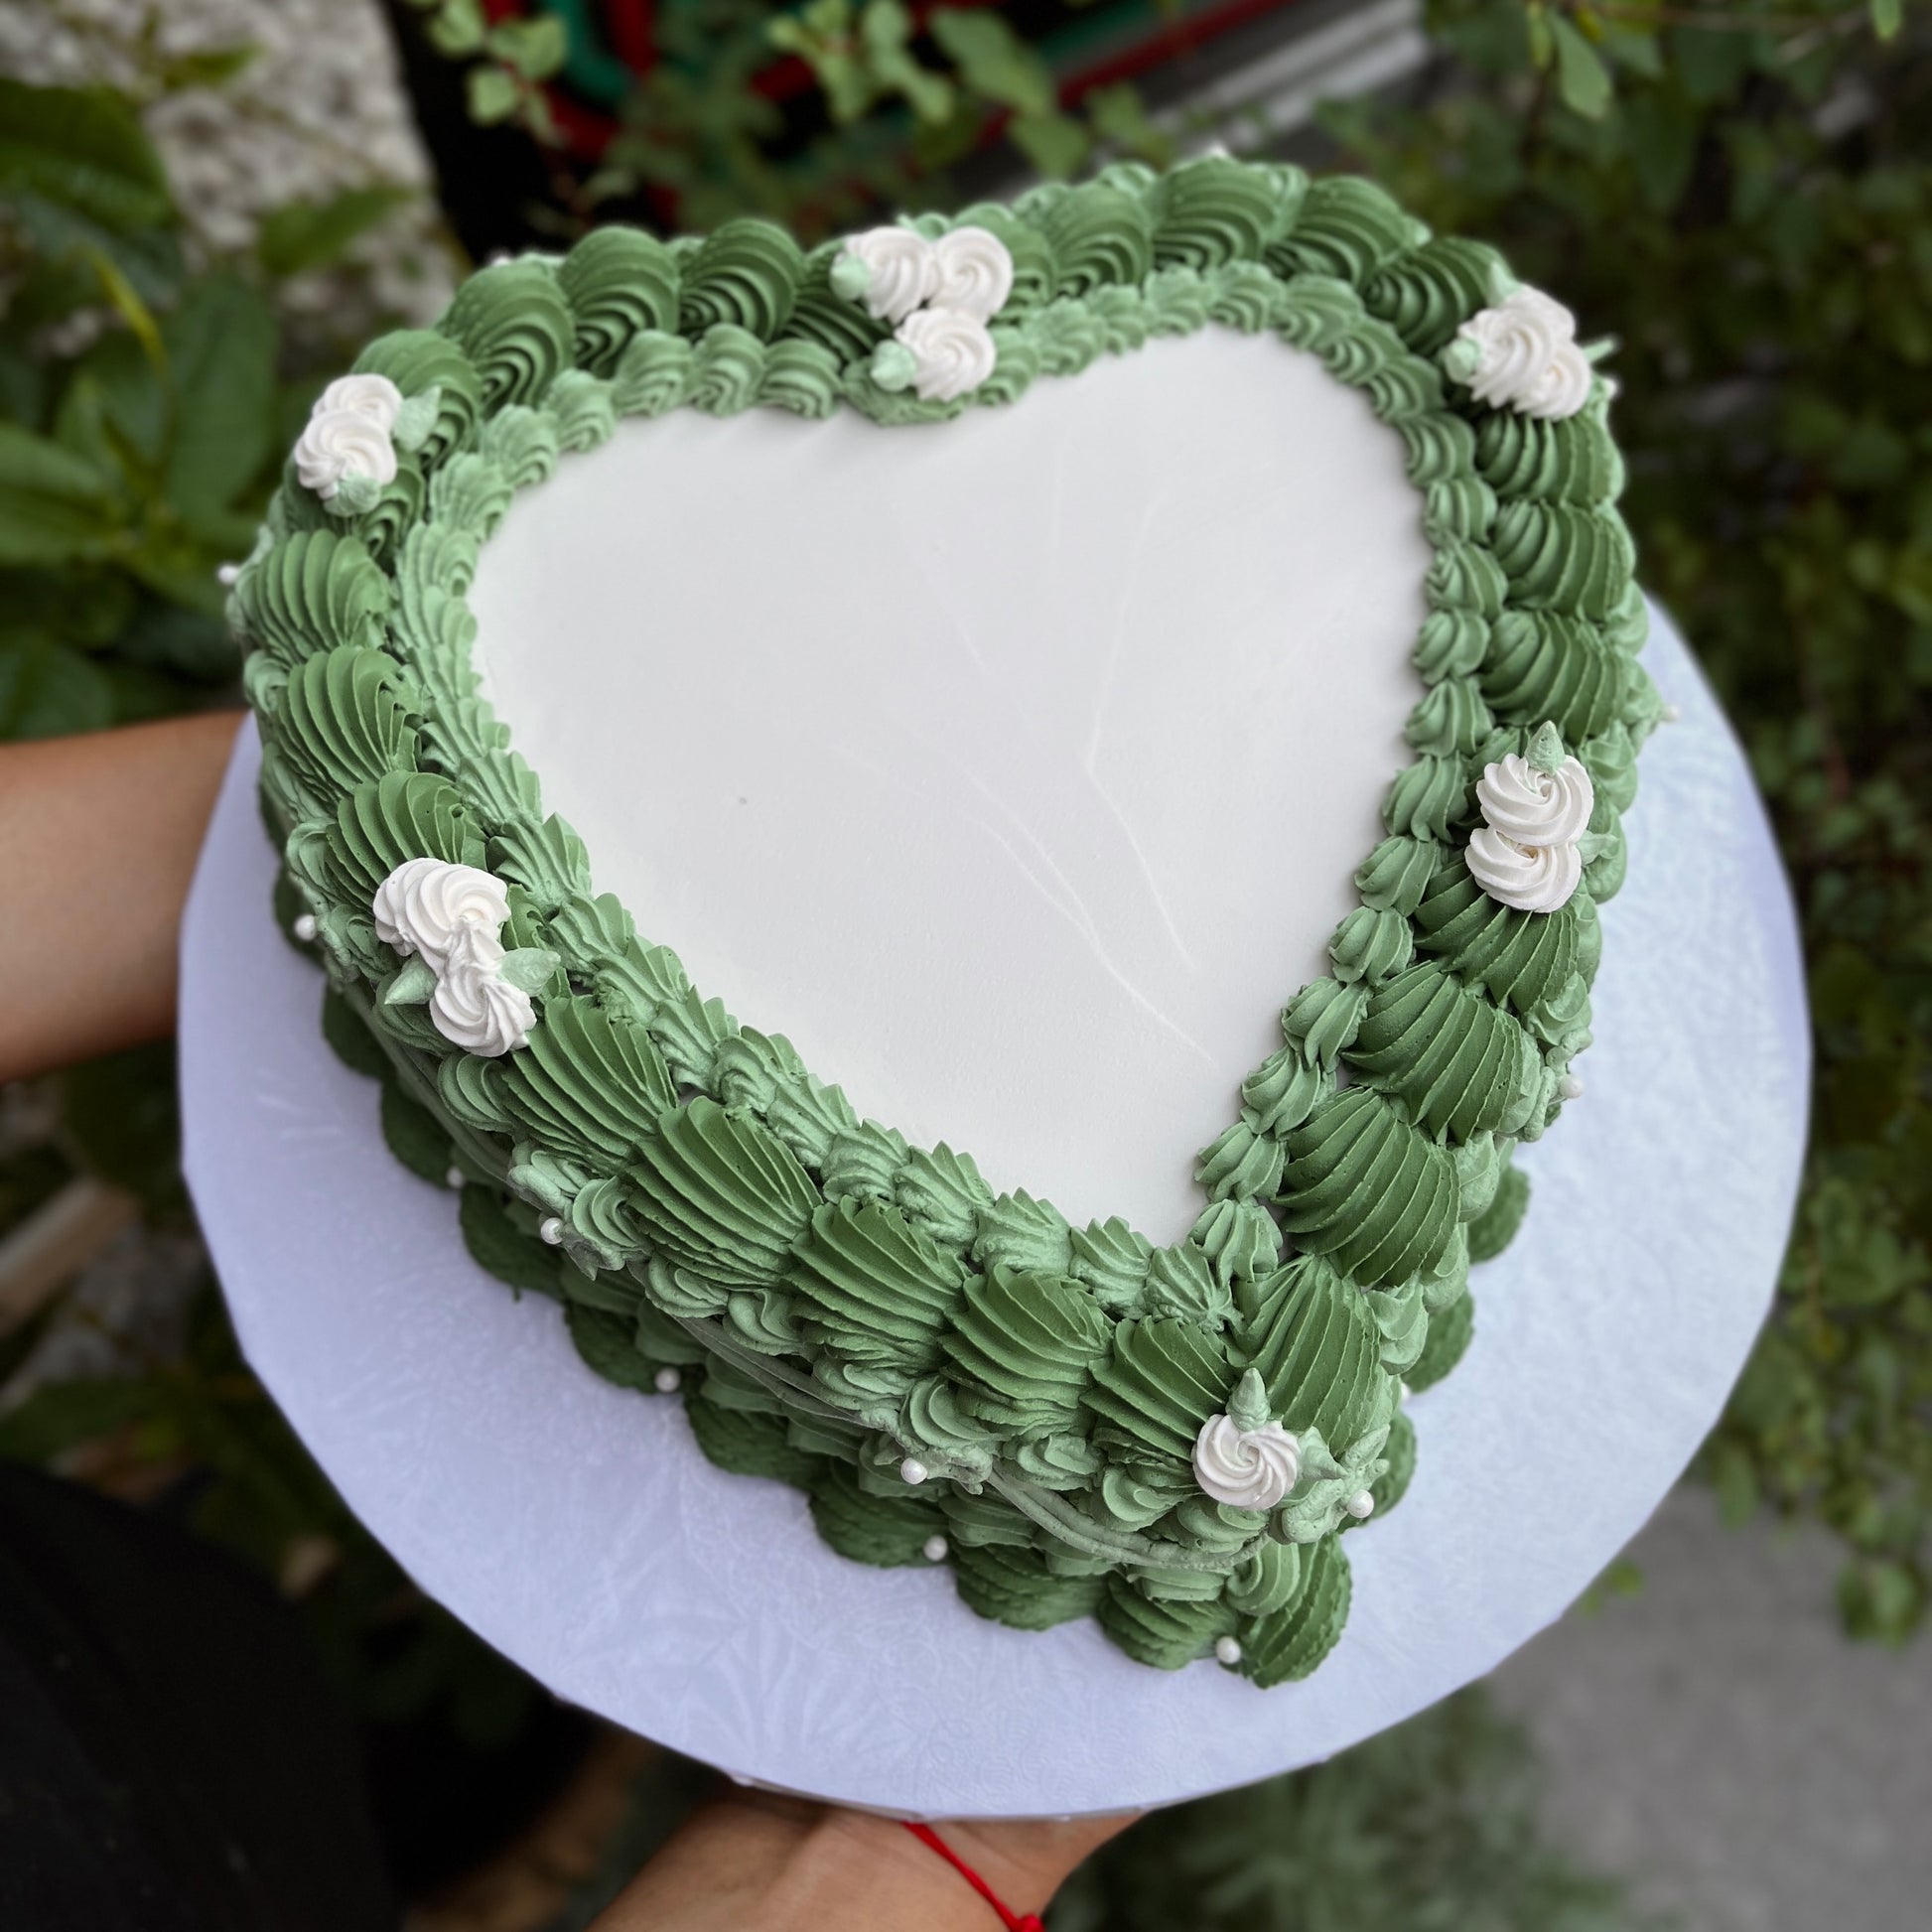 Retro green heart-shaped cake